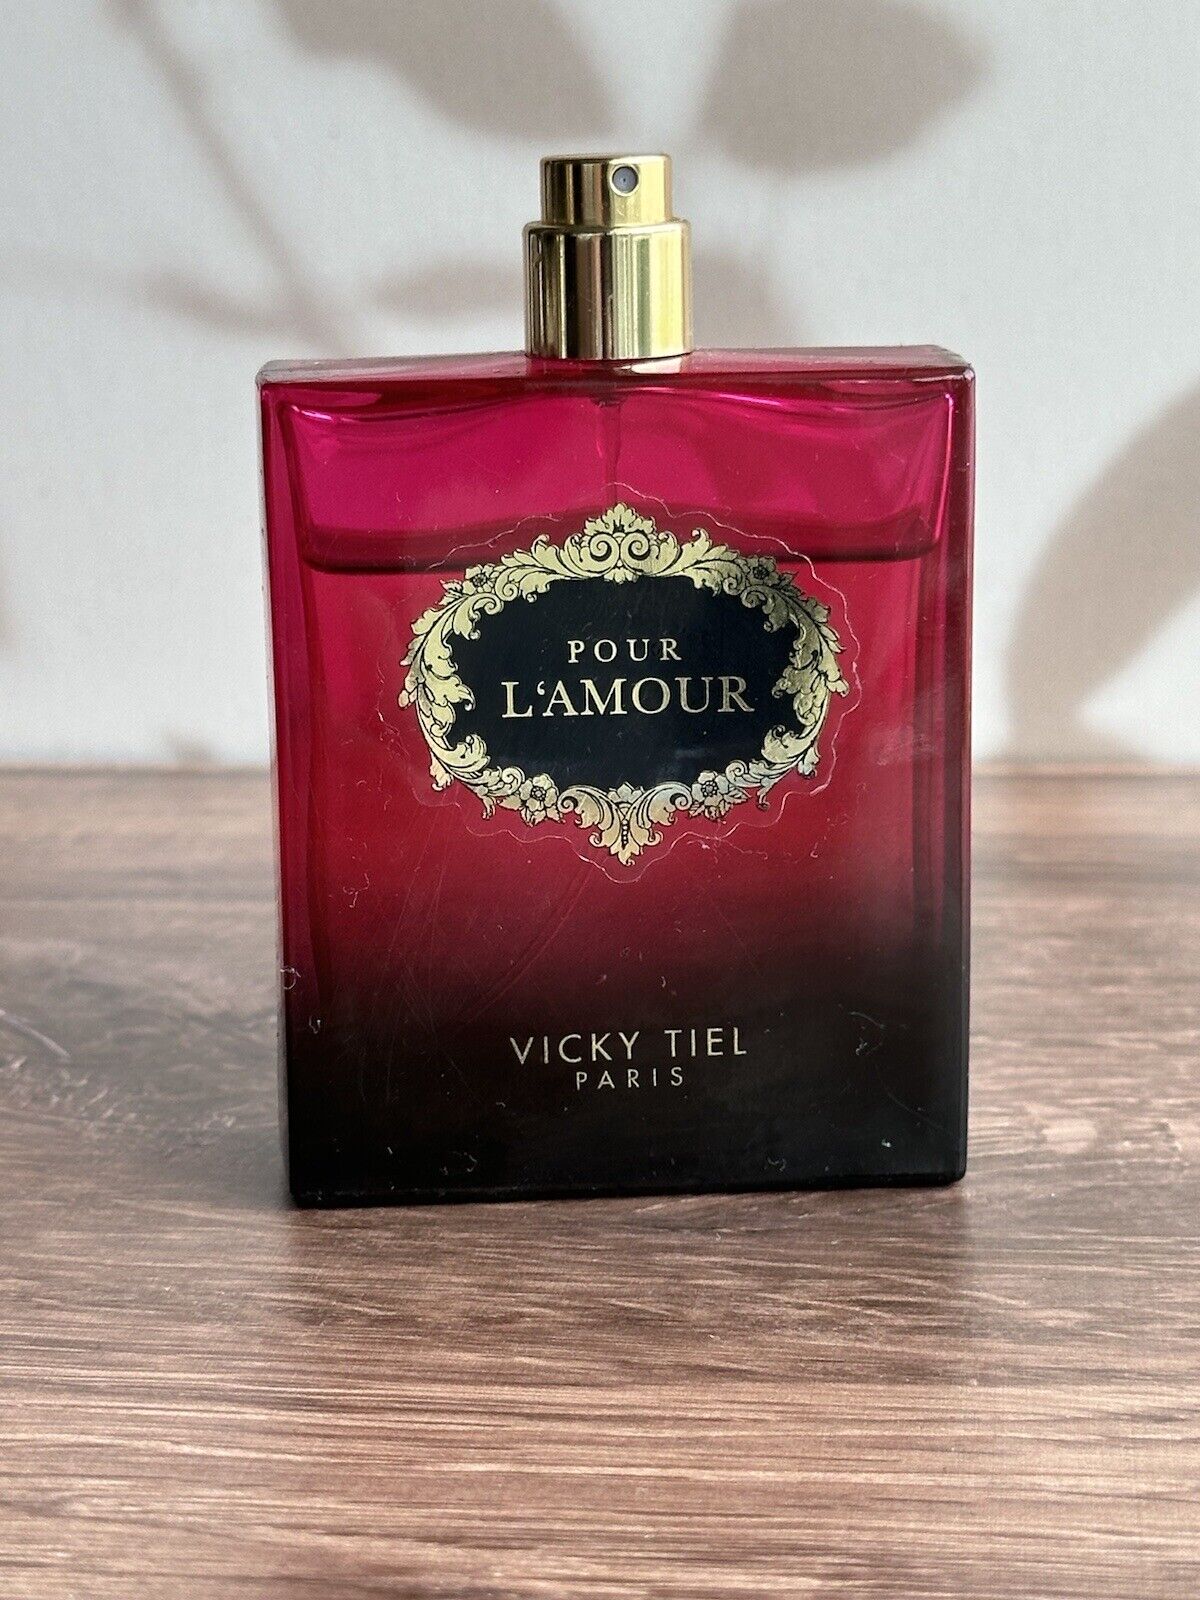 Pour L’ AMOUR vicky tiel paris eau de perfume 3.4 Oz Appr 80% Full  Vintage